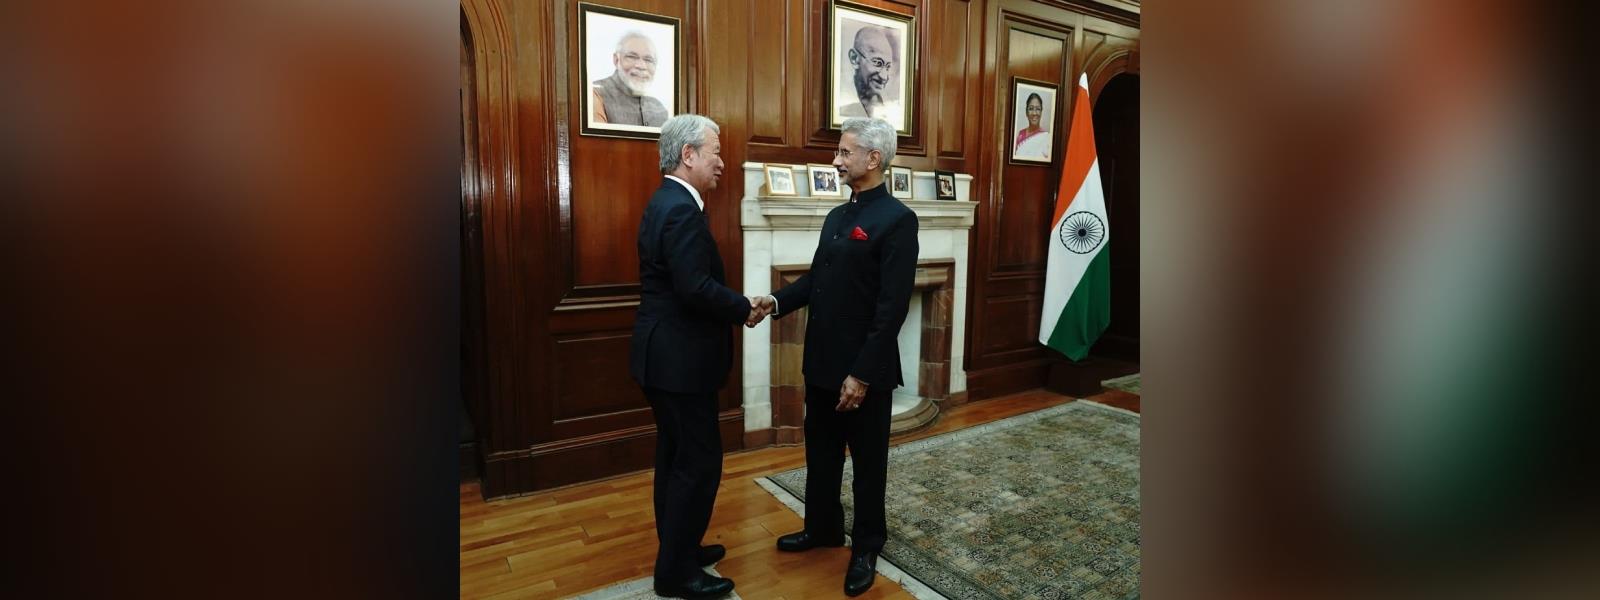 External Affairs Minister Dr. S. Jaishankar met H.E. Dr. Akihiko Tanaka, President of Japan India Cooperation Agency in New Delhi